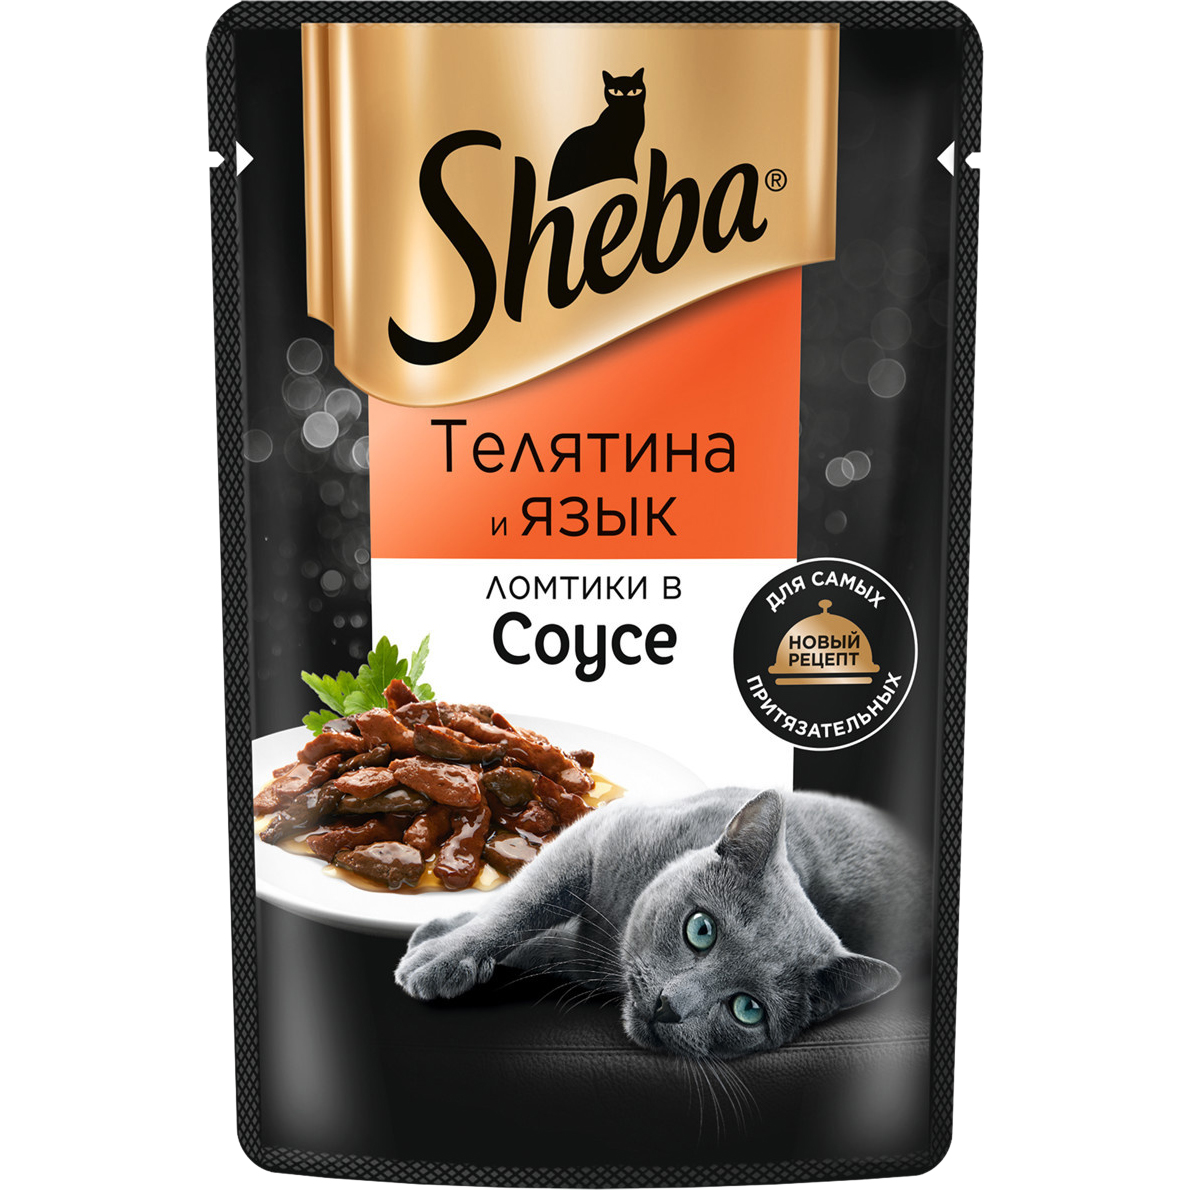 Корм для кошек Sheba Телятина и язык ломтики в соусе 75 г корм для кошек sheba форель и креветки ломтики в соусе 75 г